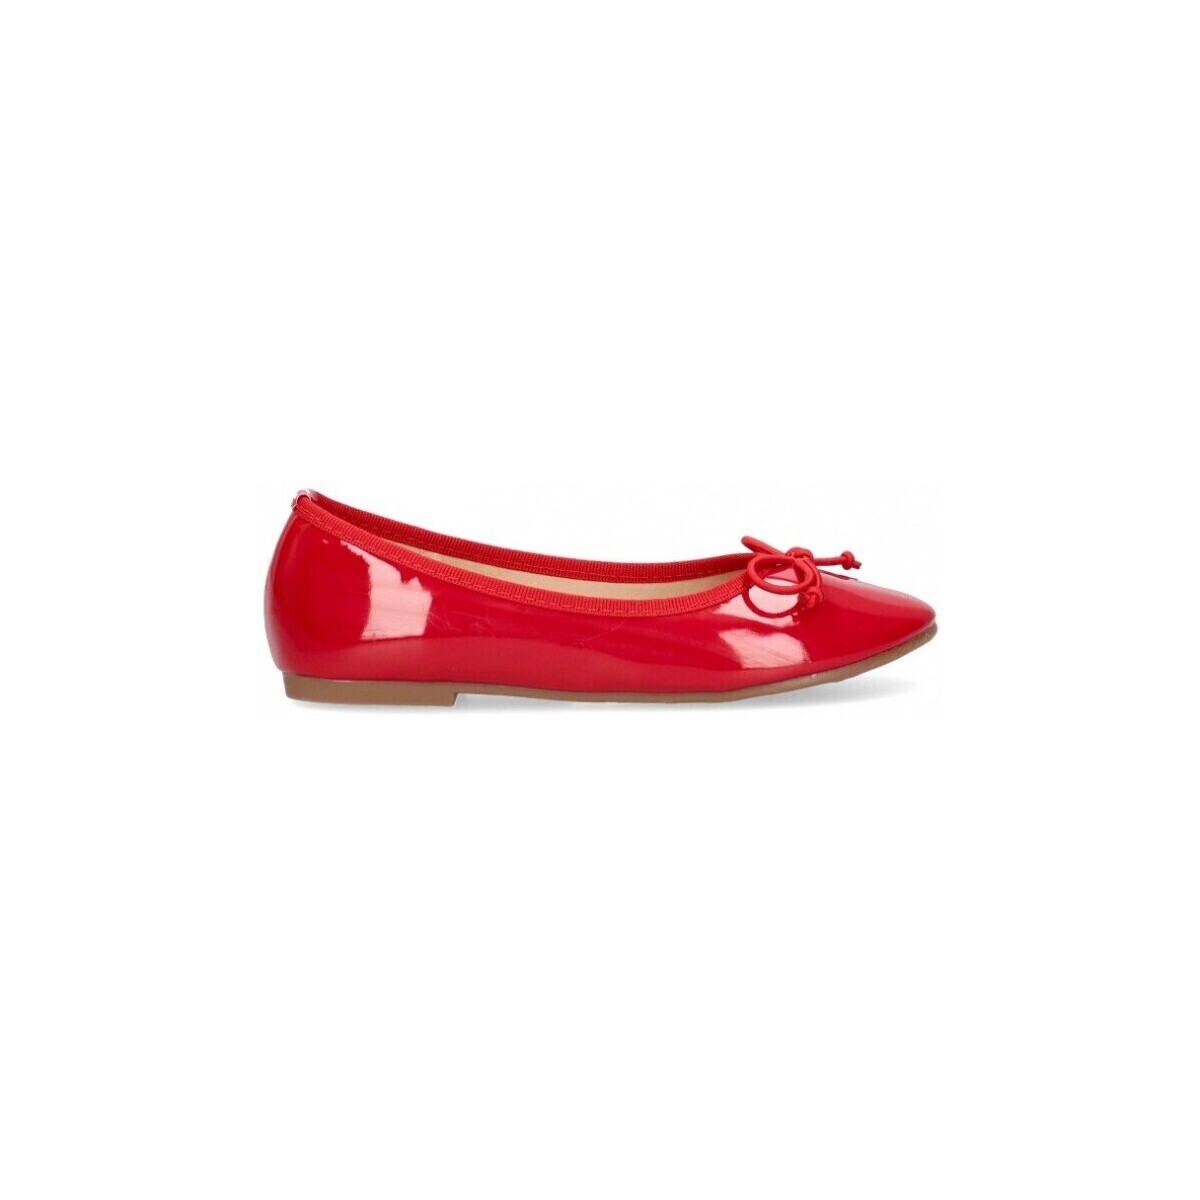 Παπούτσια Κορίτσι Μπαλαρίνες Luna Kids 68779 Red